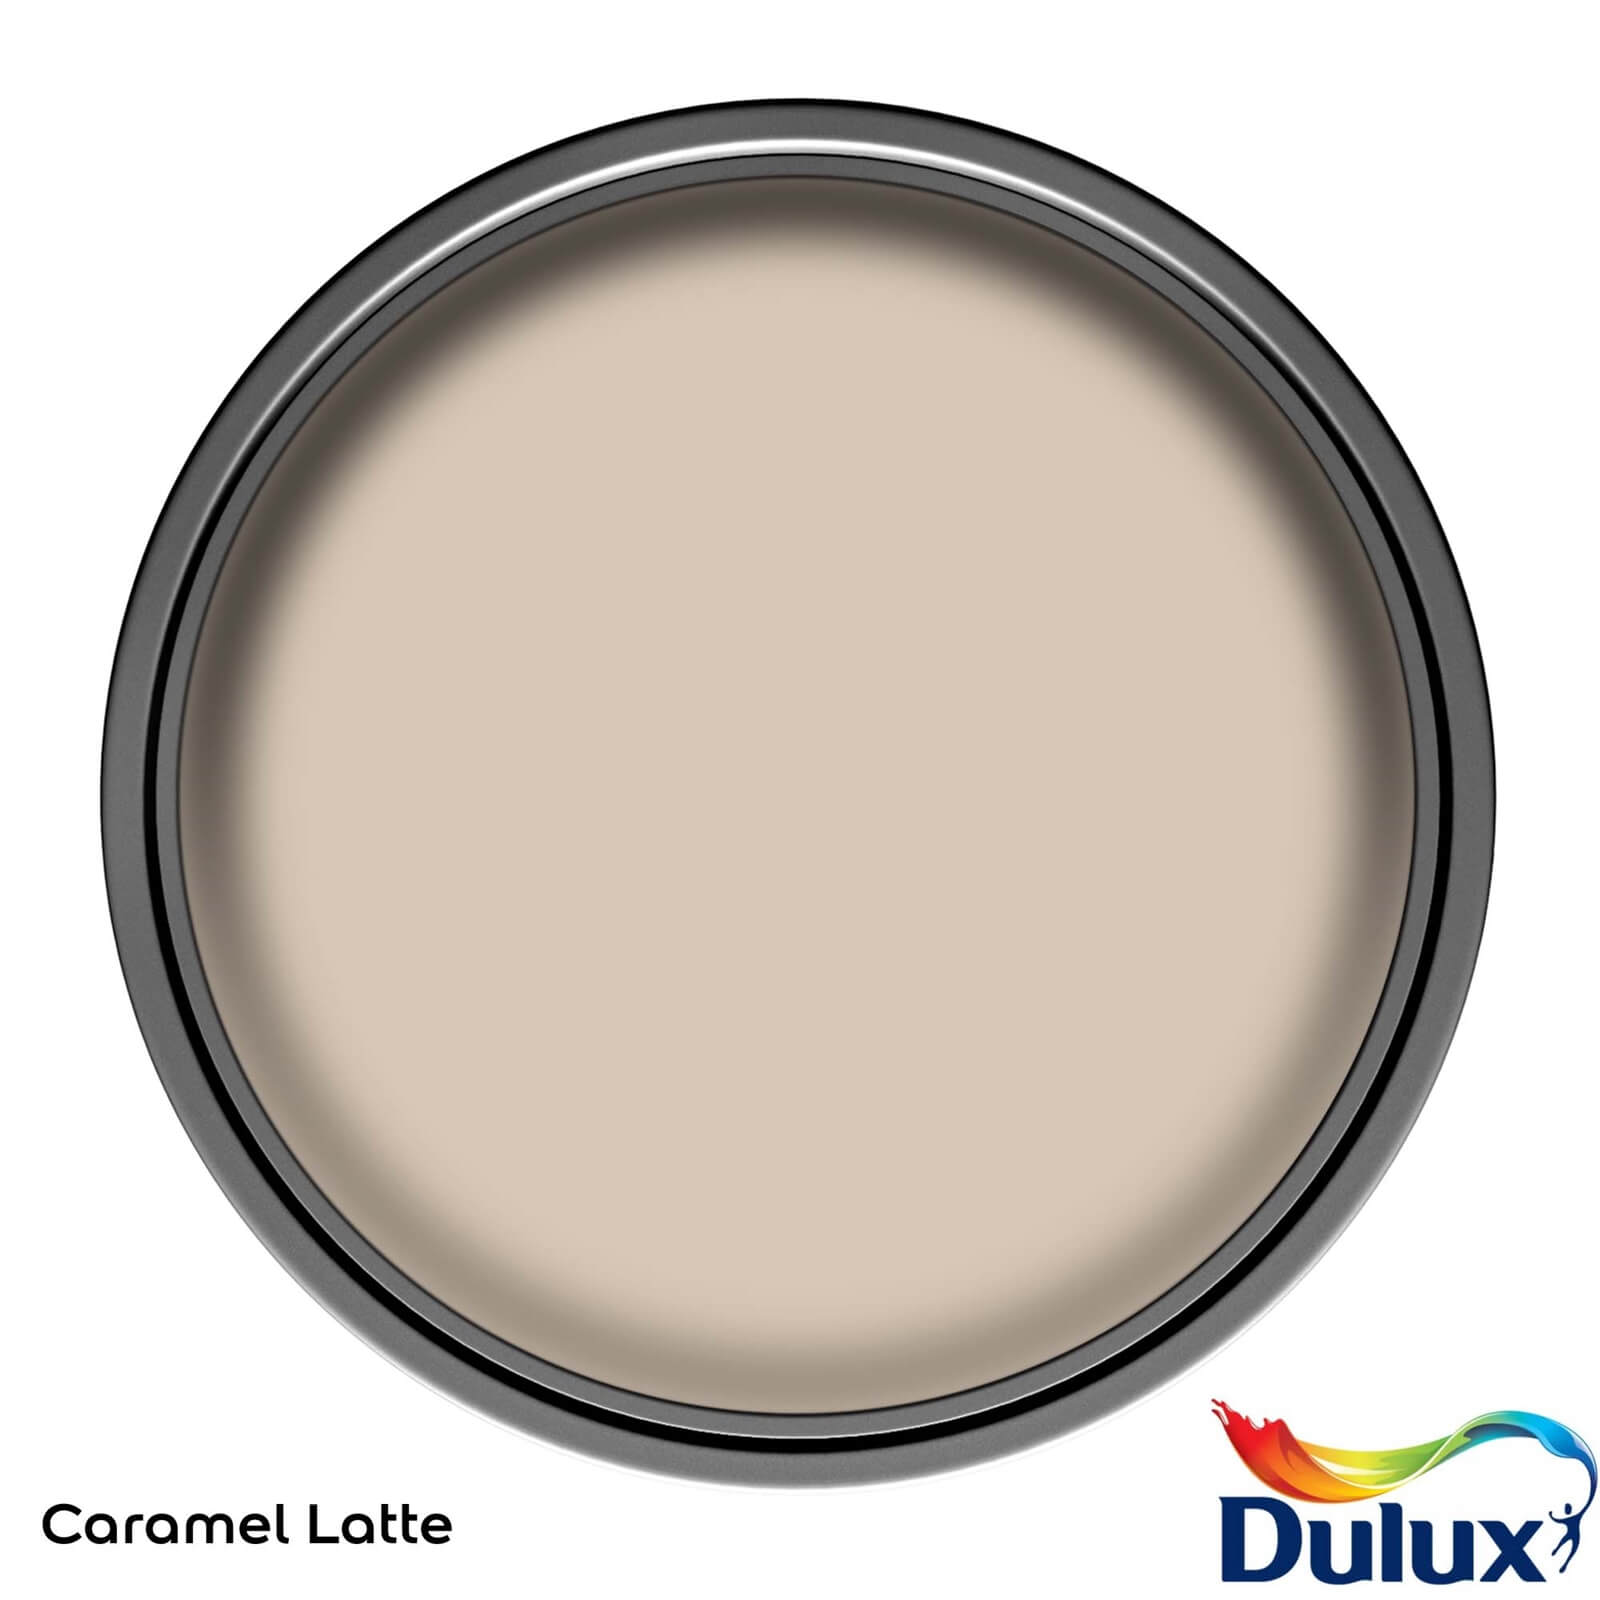 Dulux Easycare Kitchen Caramel Latte Matt Emulsion Paint - 2.5L